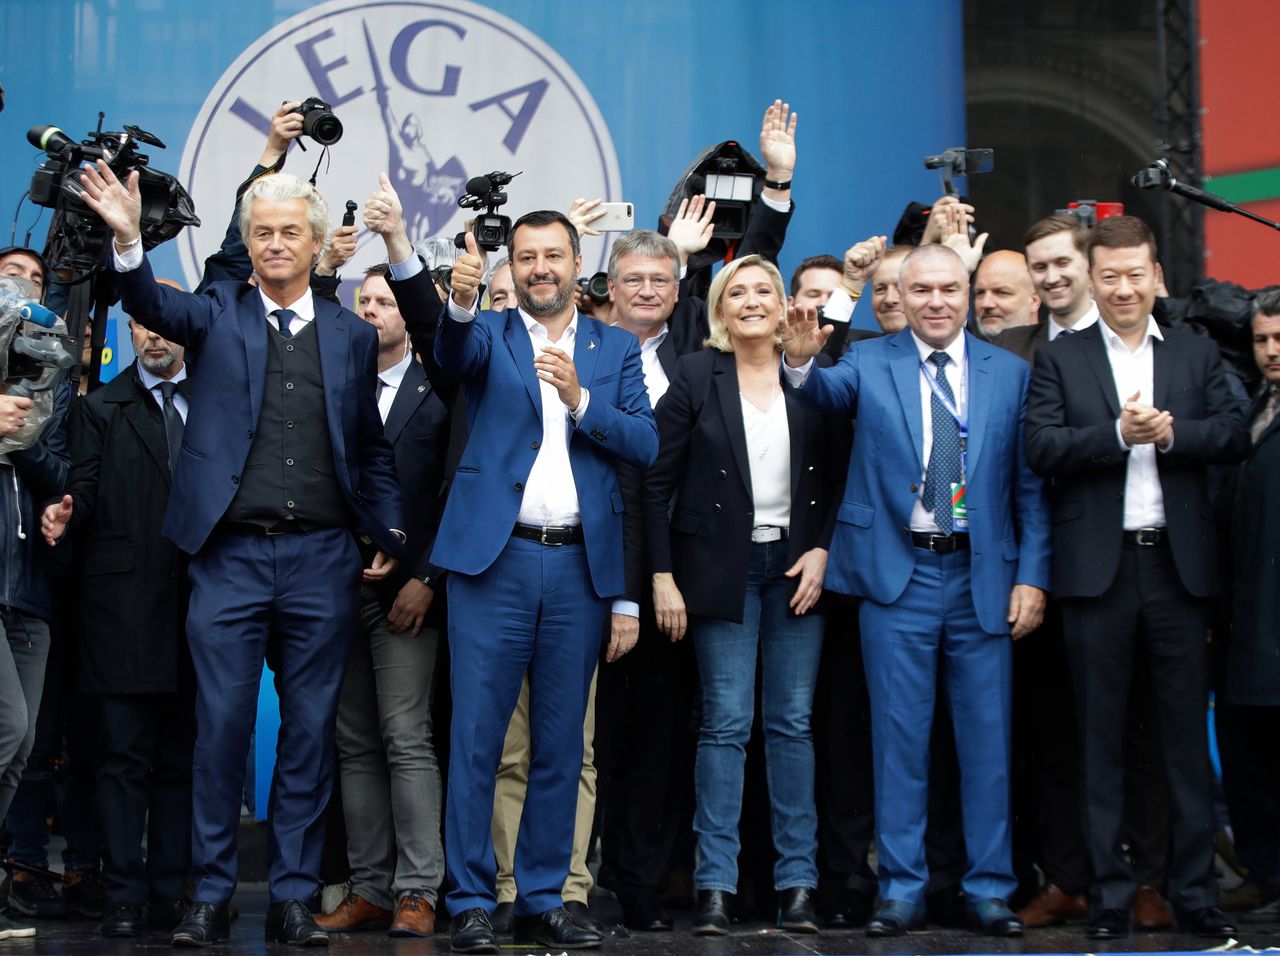 De ‘patriottische’ bijeenkomst van eurosceptische partijen, zaterdag in Milaan: v.l.n.r. Geert Wilders (PVV, Nederland), Matteo Salvini (Lega, Italië), Jörg Meuthen (AfD, Duitsland) Marine Le Pen (RN, Frankrijk), Vaselin Marehki (Volya, Bulgarije) en Tomio Okamura (PSD, Tsjechië).